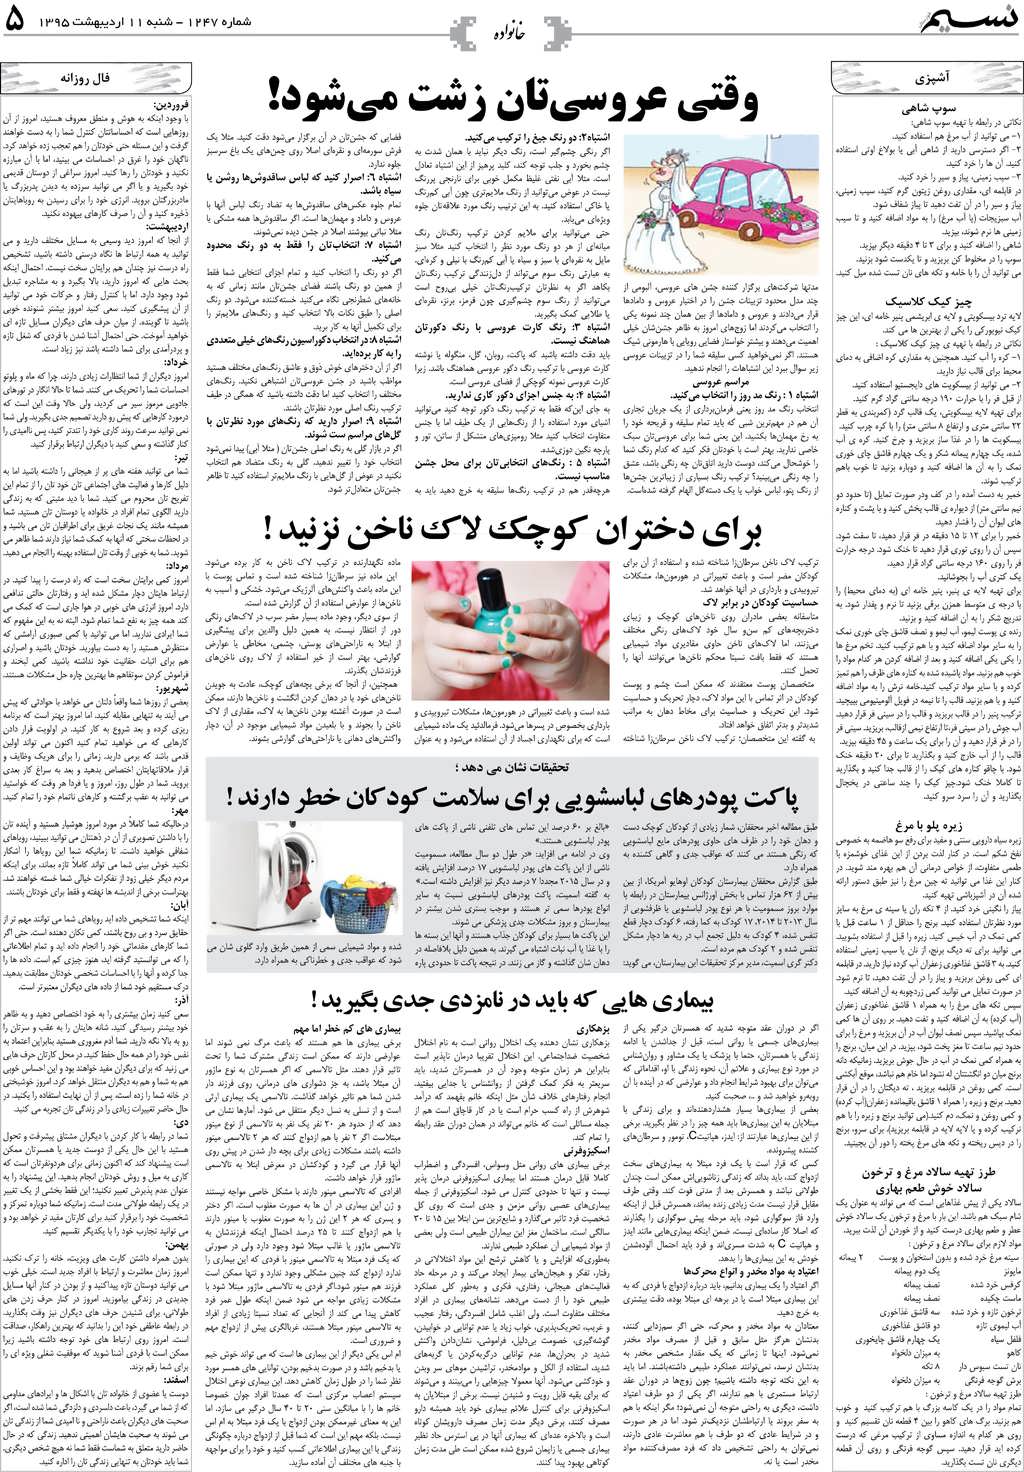 صفحه خانواده روزنامه نسیم شماره 1247